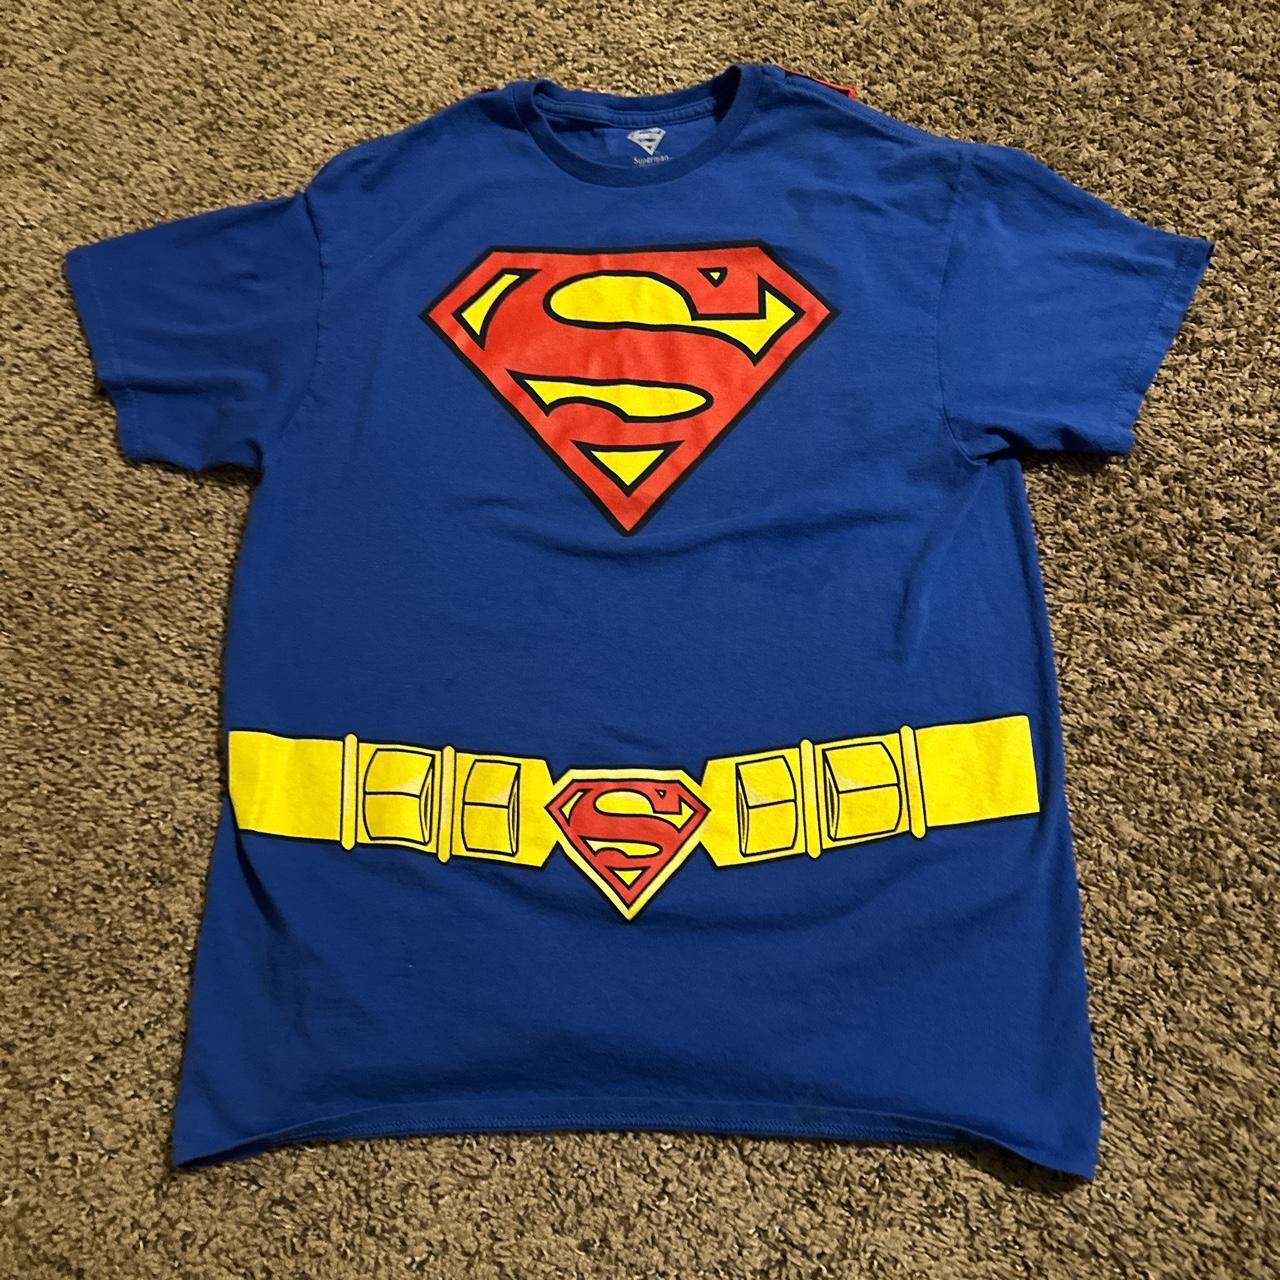 Super Man Shirt Comes With a Detachable Cape Simple... - Depop